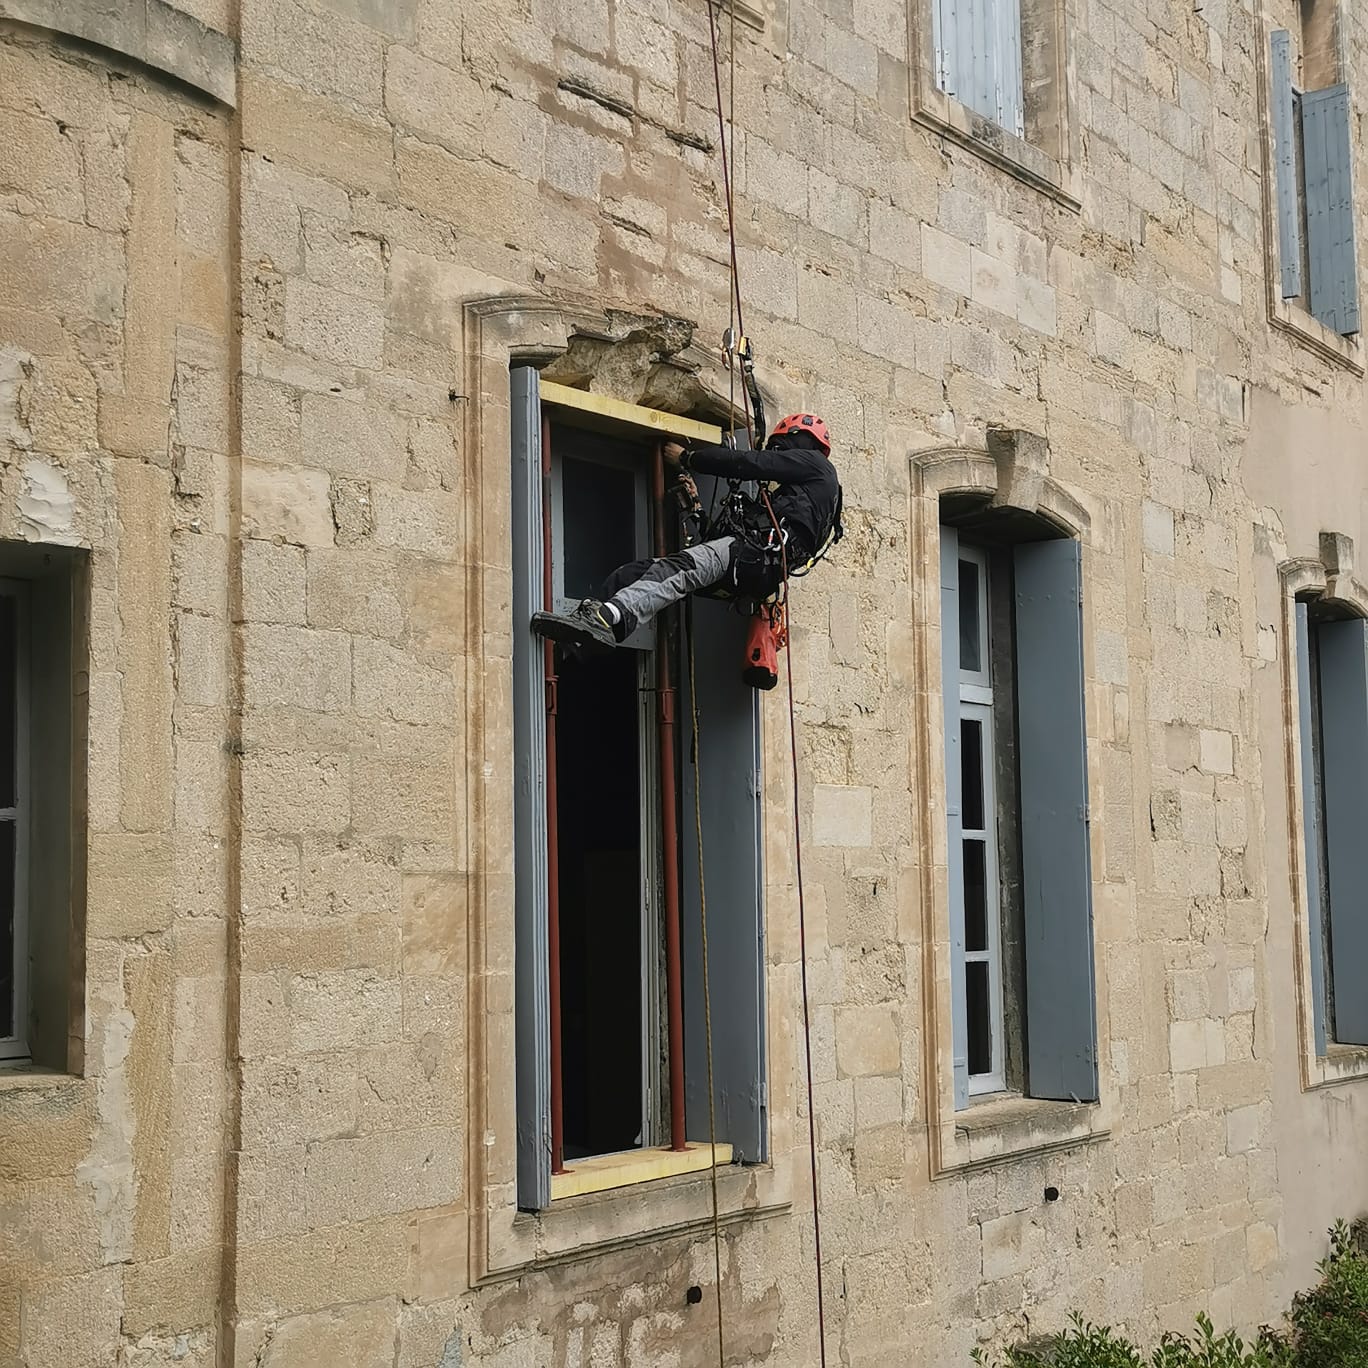 Travaux de confortement d'une fenêtre d'un bâtiment historique pour sécuriser et éviter un affaissement